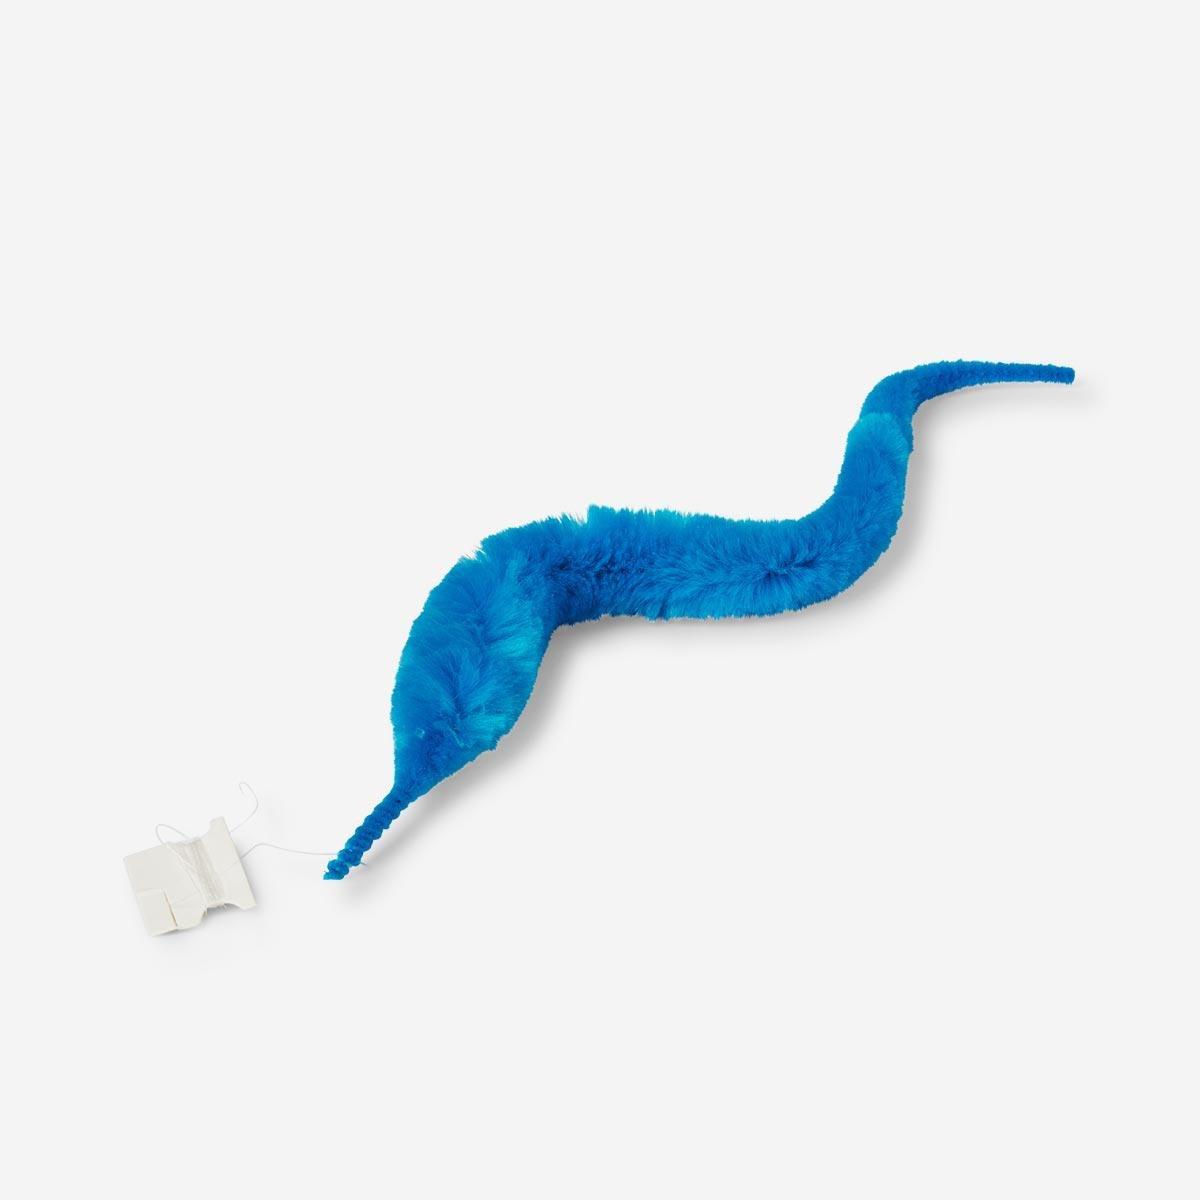 Blue furry twisty worm